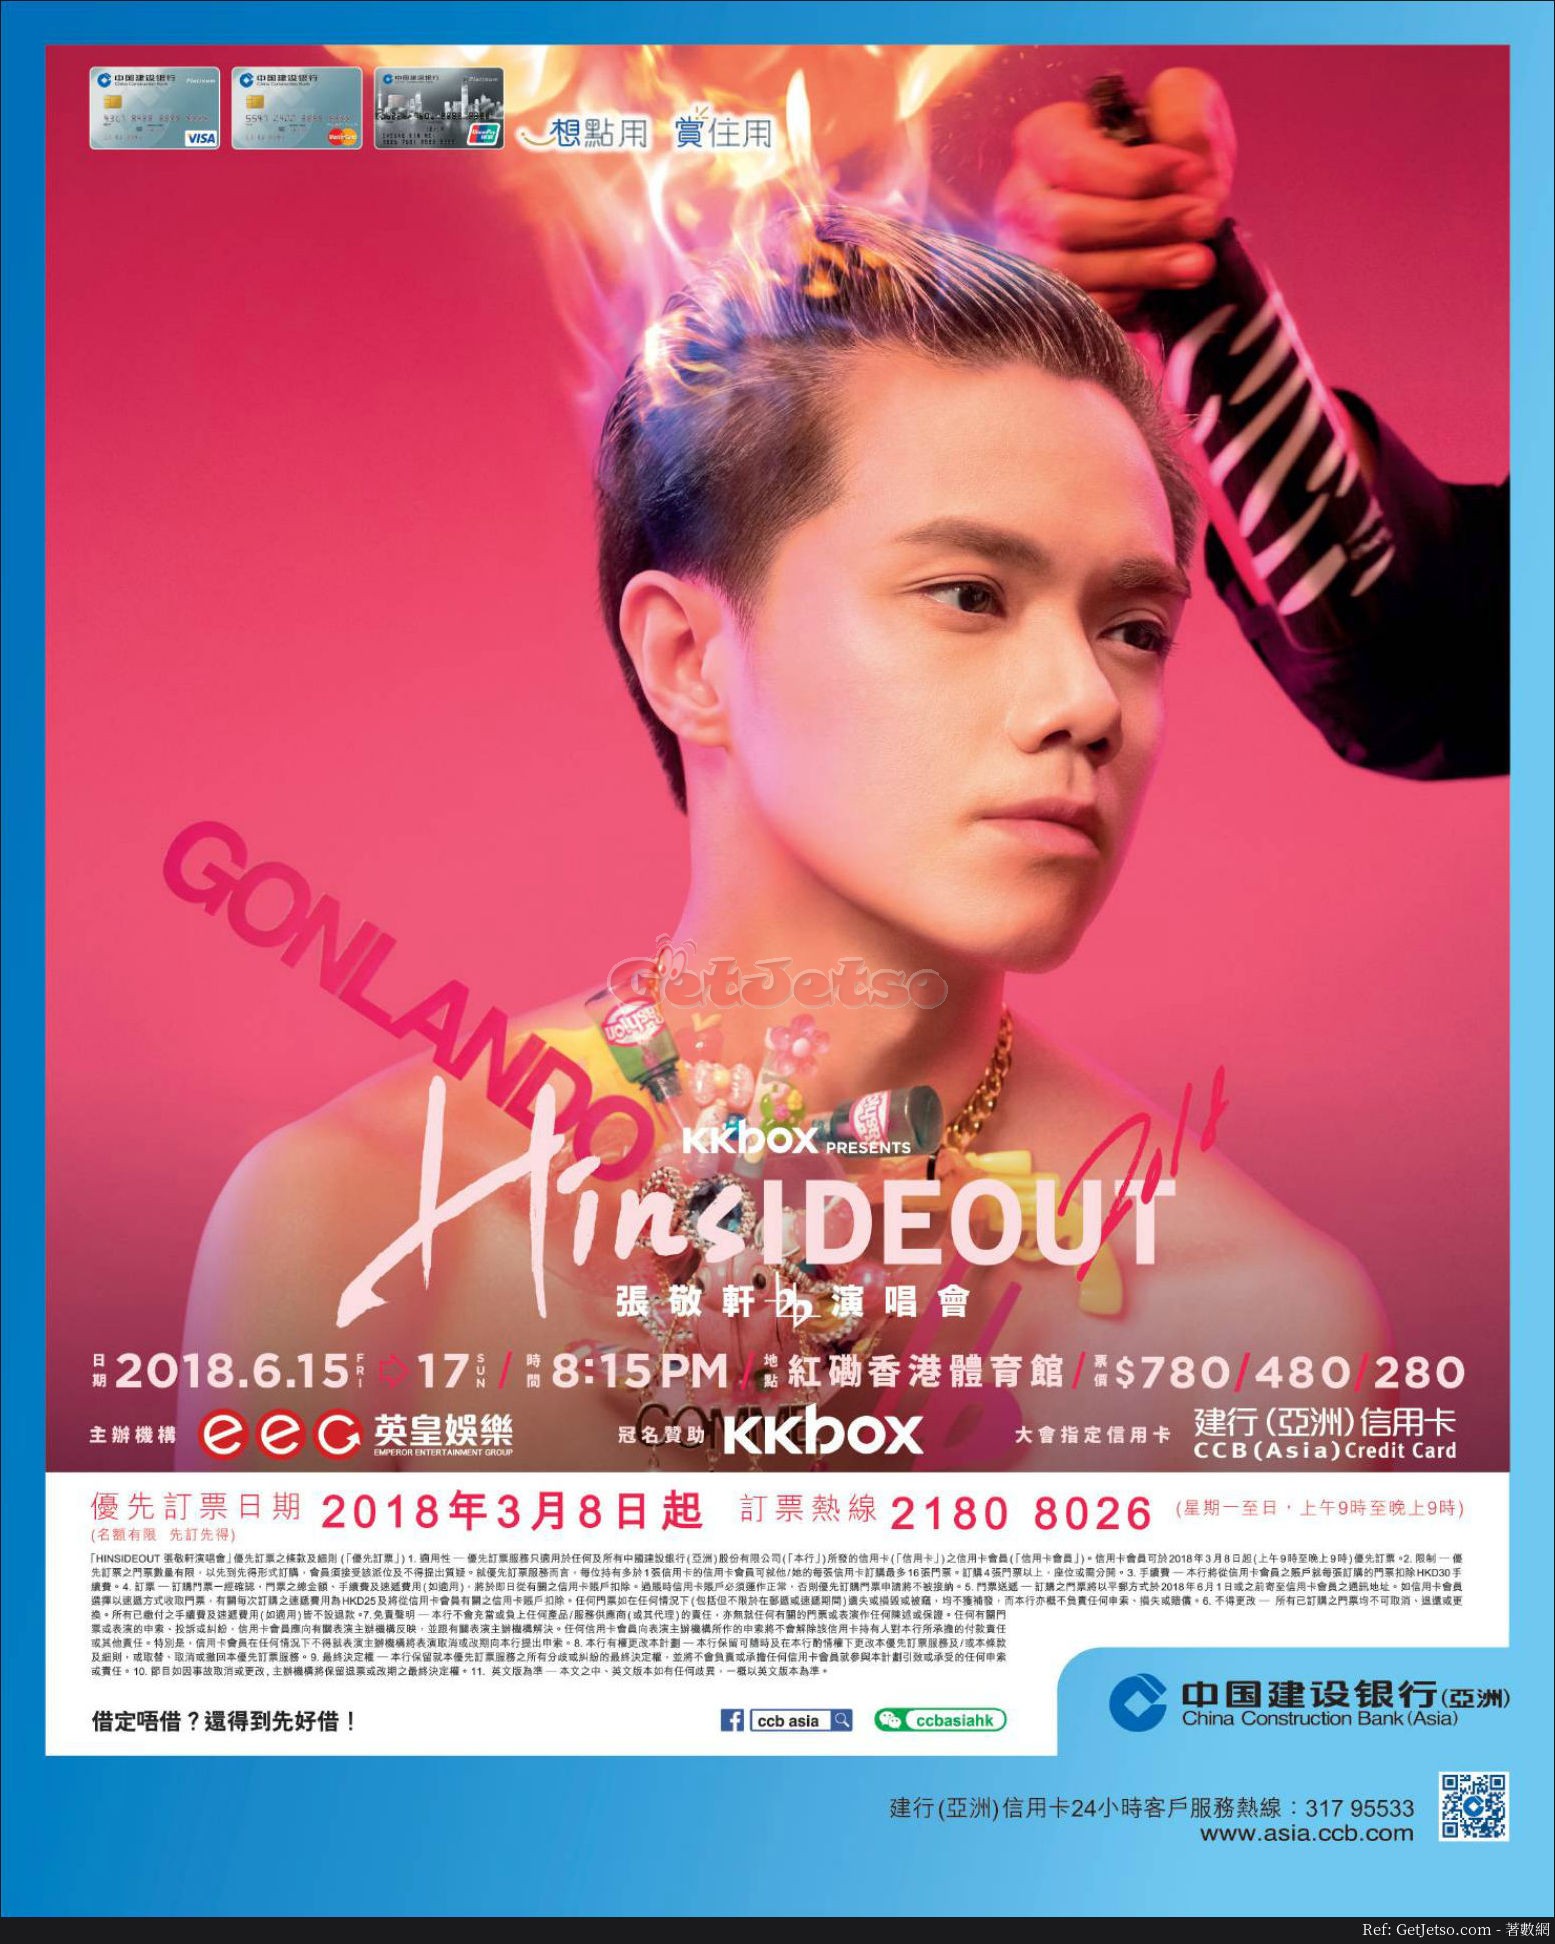 張敬軒演唱會HINSIDEOUT 加場門票公開發售(18年5月3日起)圖片1